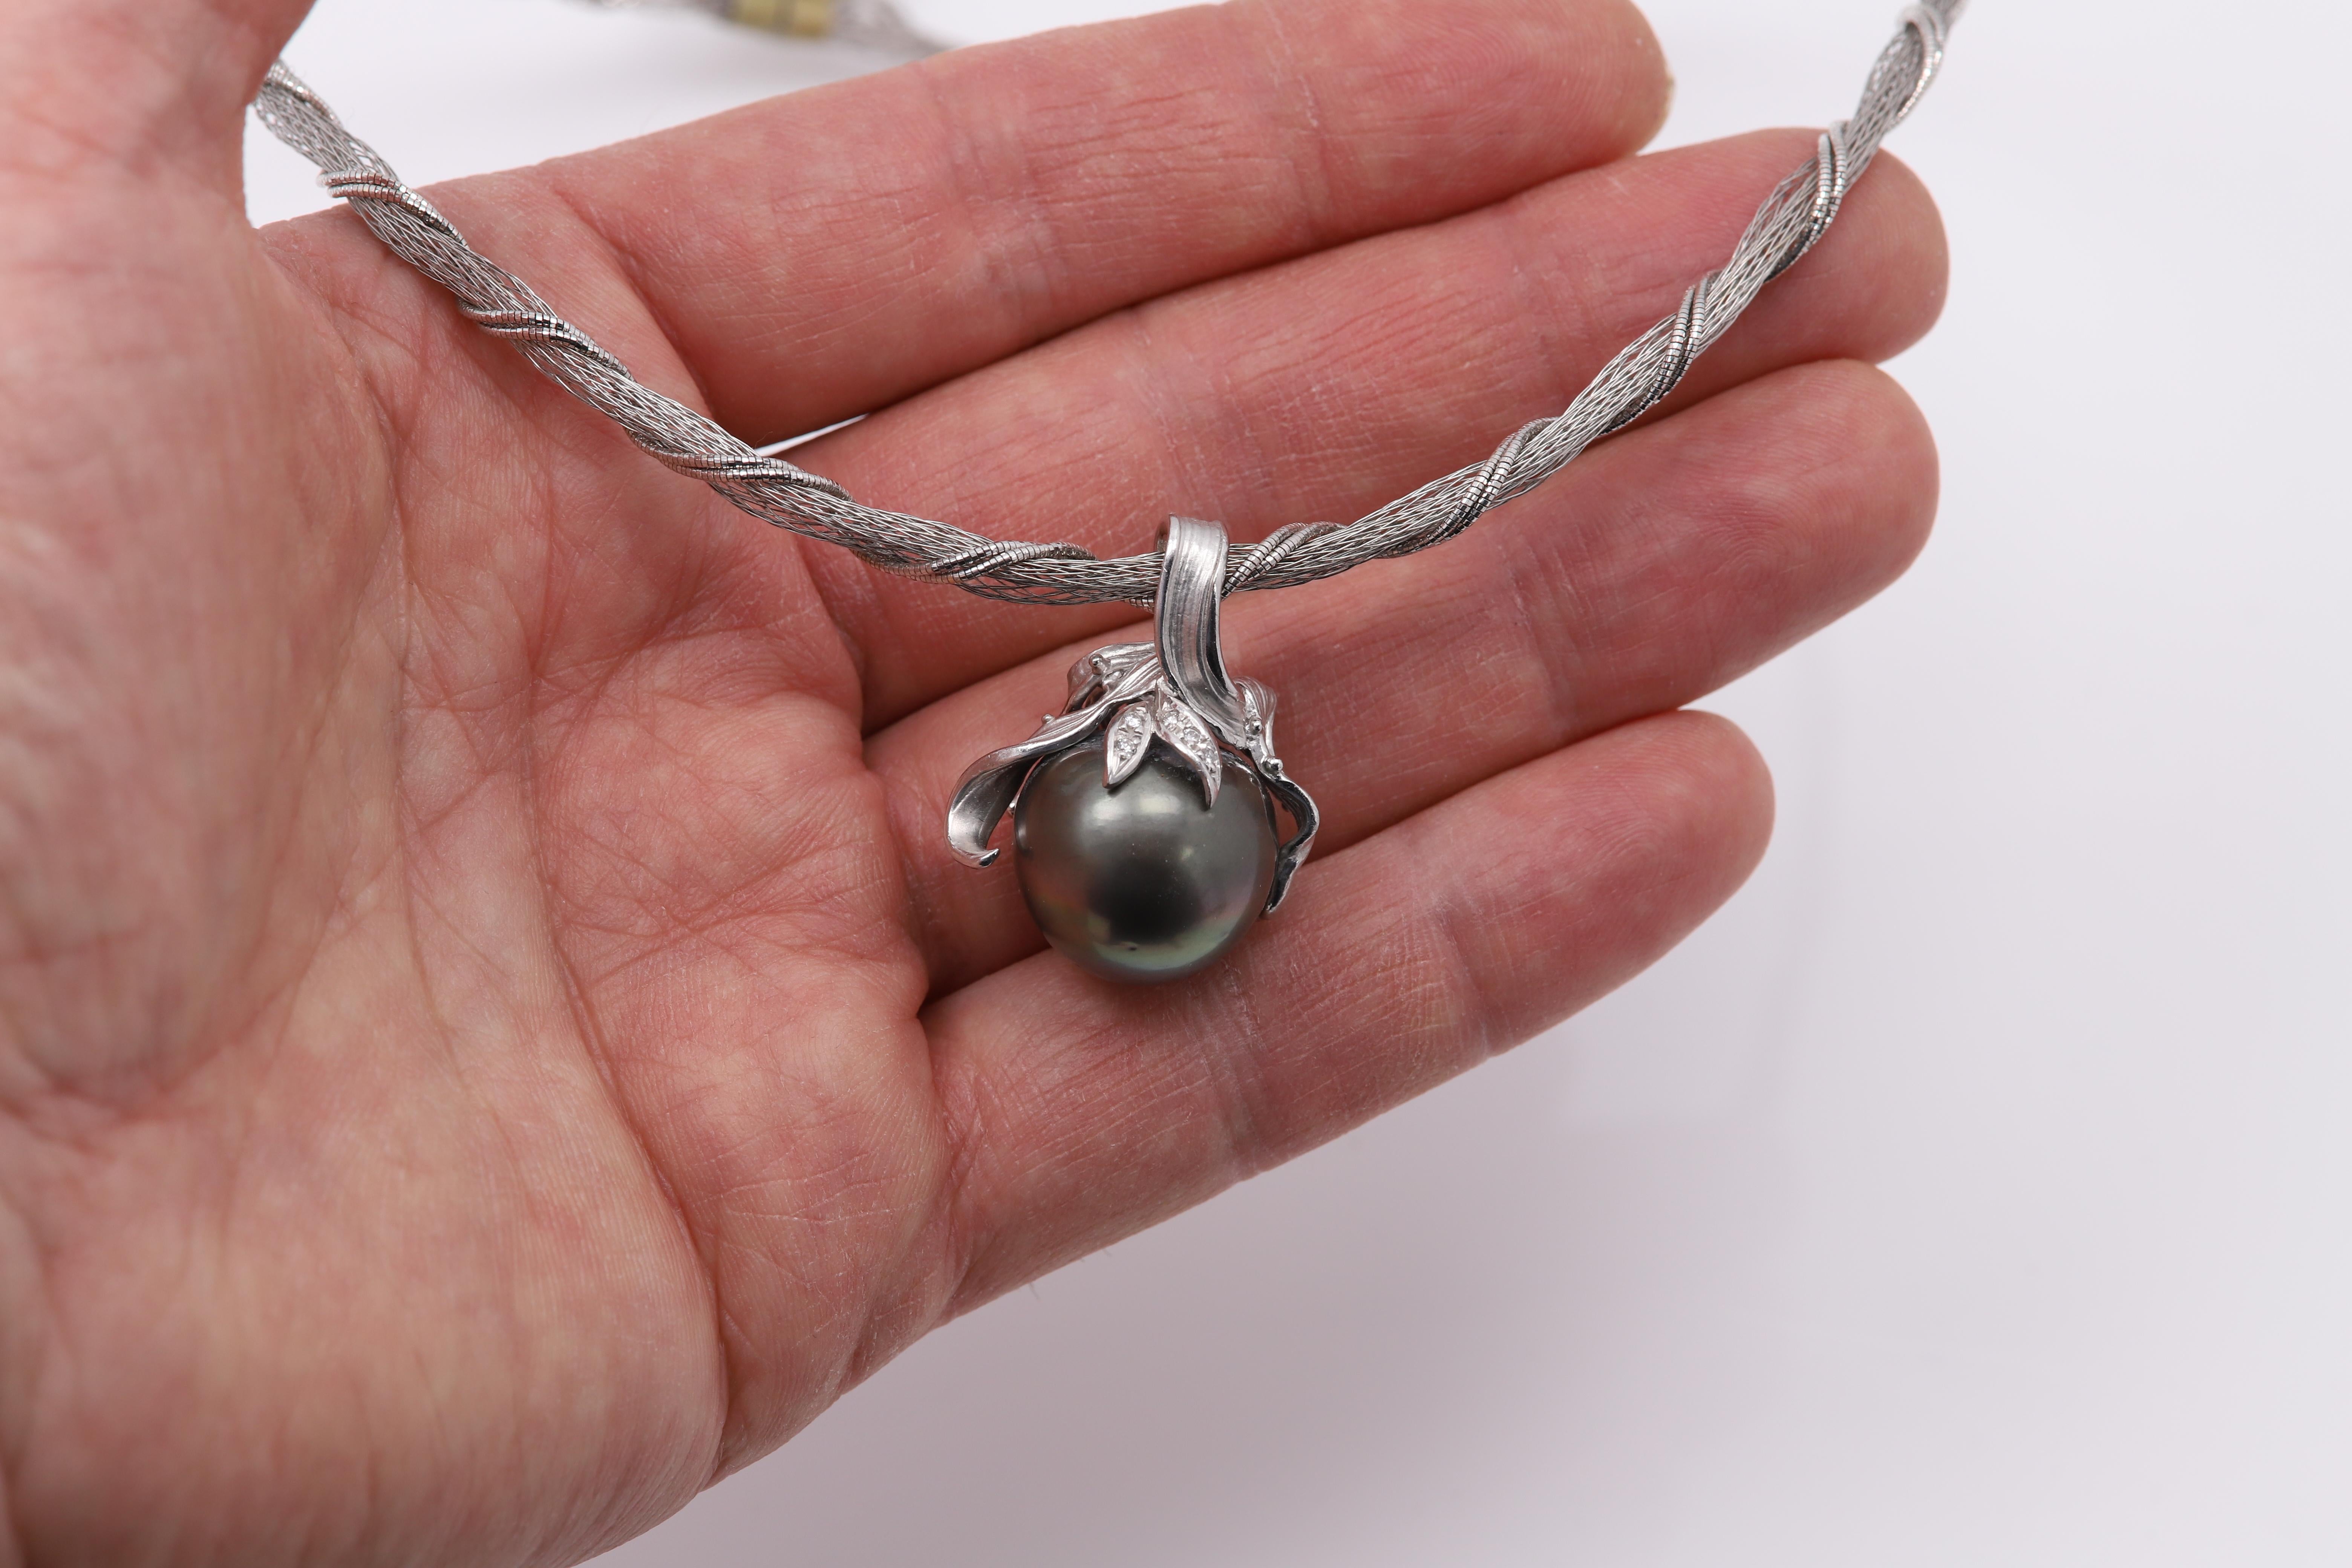 Collier impressionnant  avec un très grand pendentif en perle

Taille de la perle : environ 17 mm
Perle grise des mers du Sud
La perle est sertie en platine 950 et peut être retirée de la chaîne/du collier.
il s'agit d'un pendentif indépendant. il